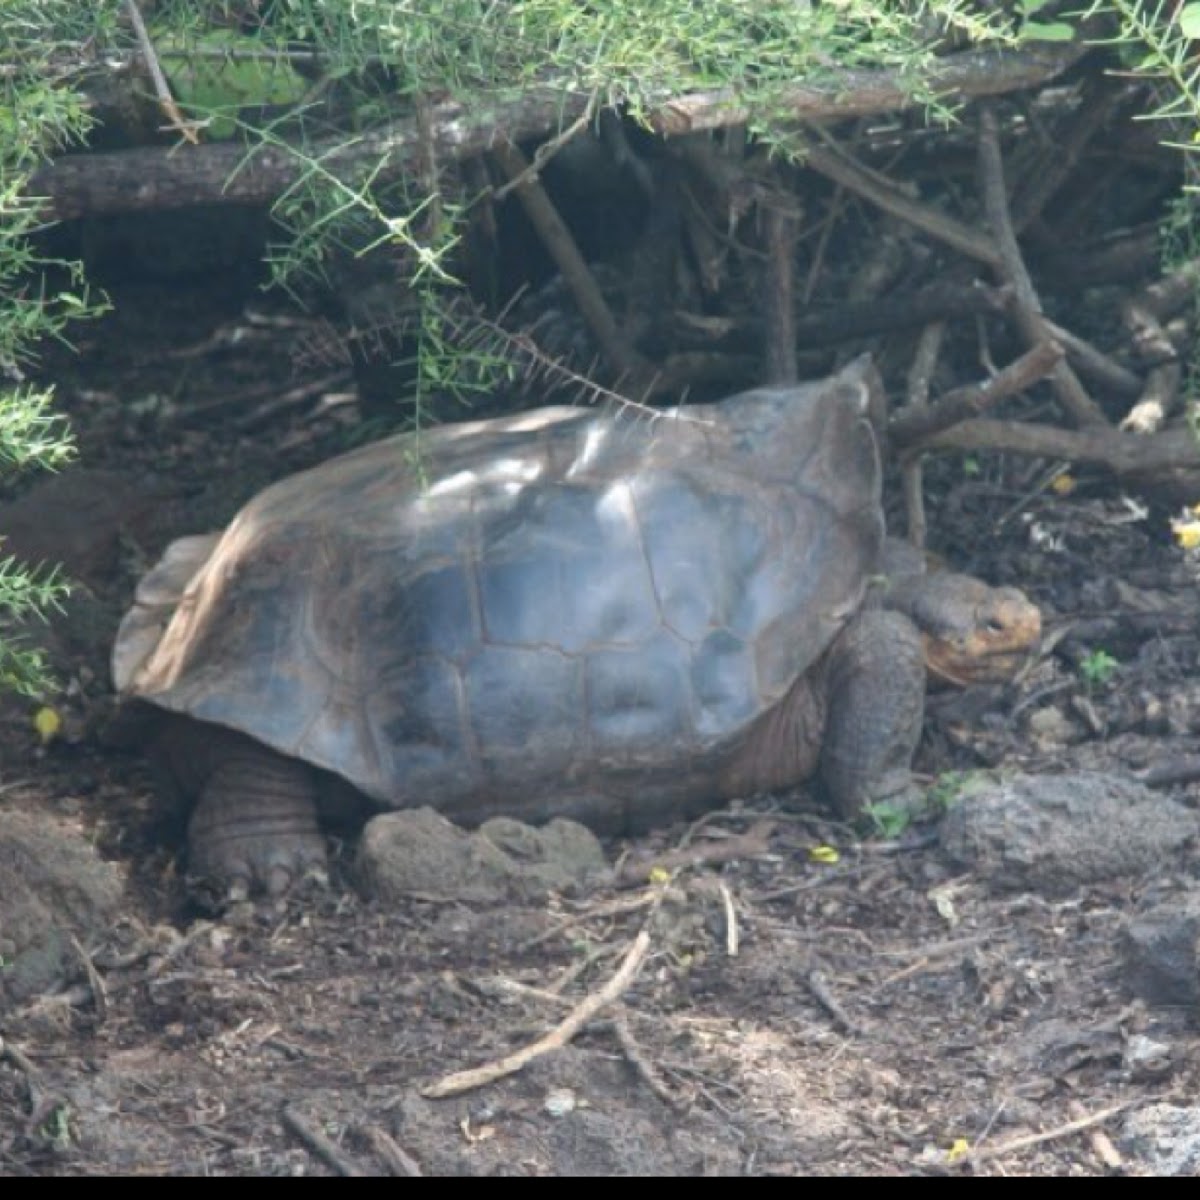 Spanish saddle shelled Galapagos giant tortoise